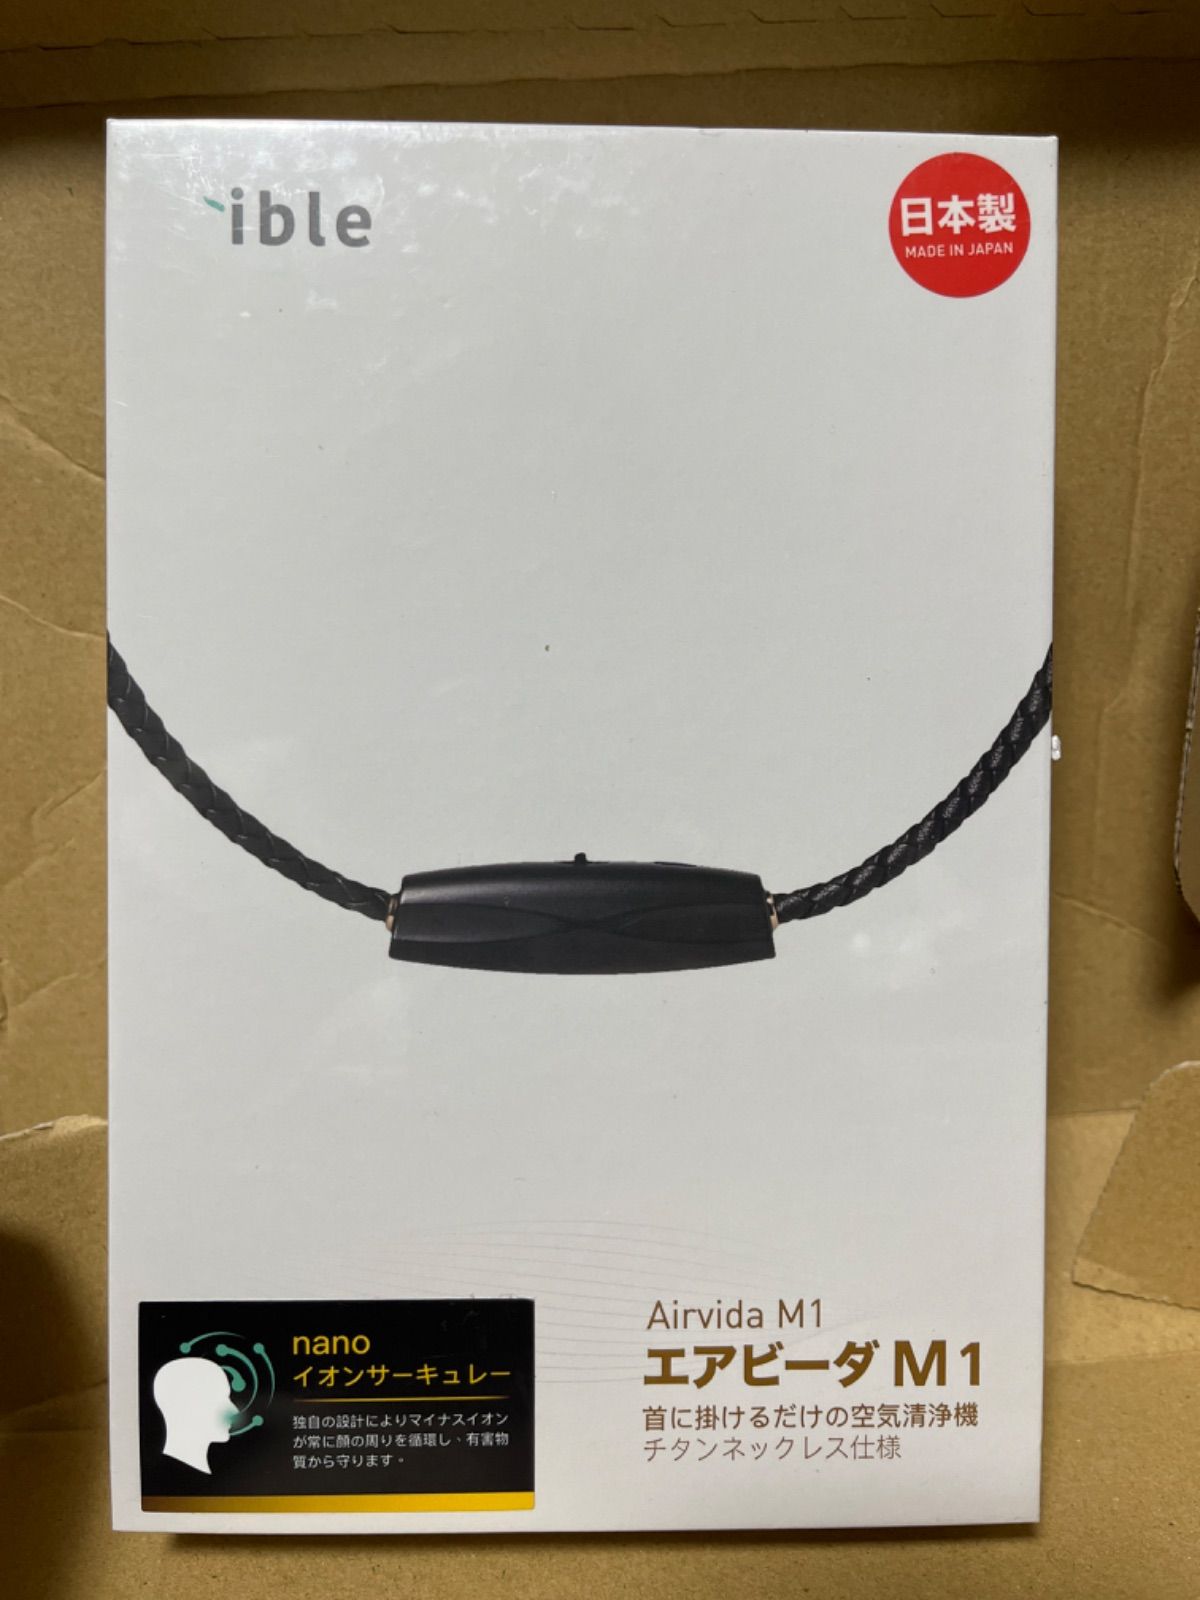 ible エアビーダM1 アミコミシヨウブラック BLACK - 空調